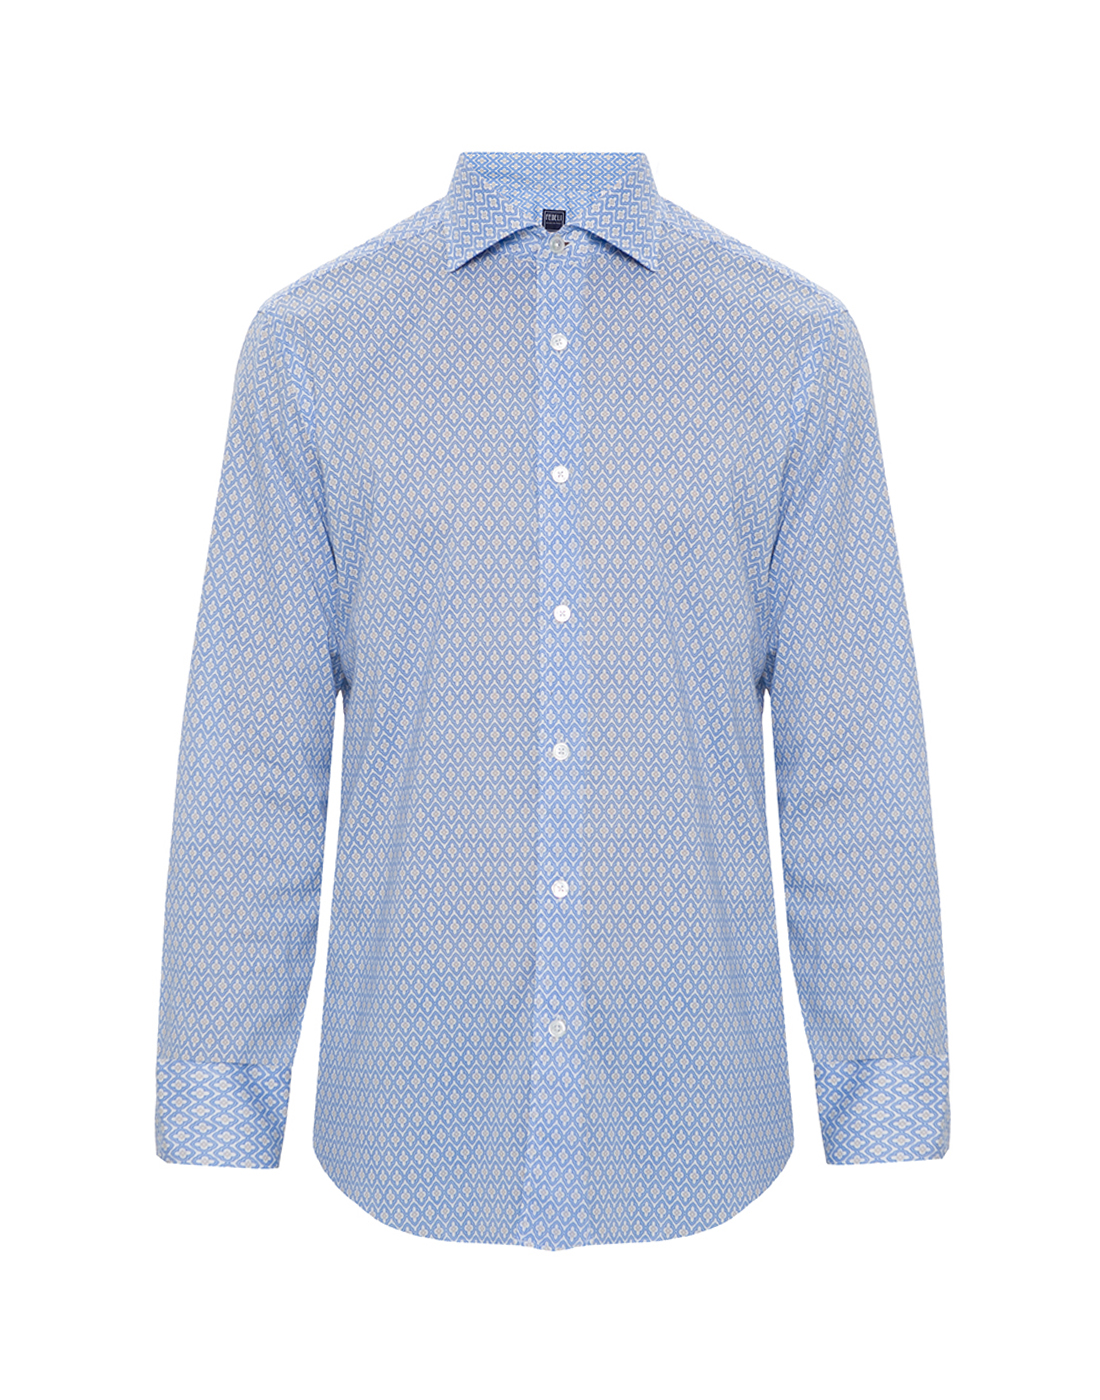 Рубашка голубая мужская Fedeli S7UE00512-C09996/4-1